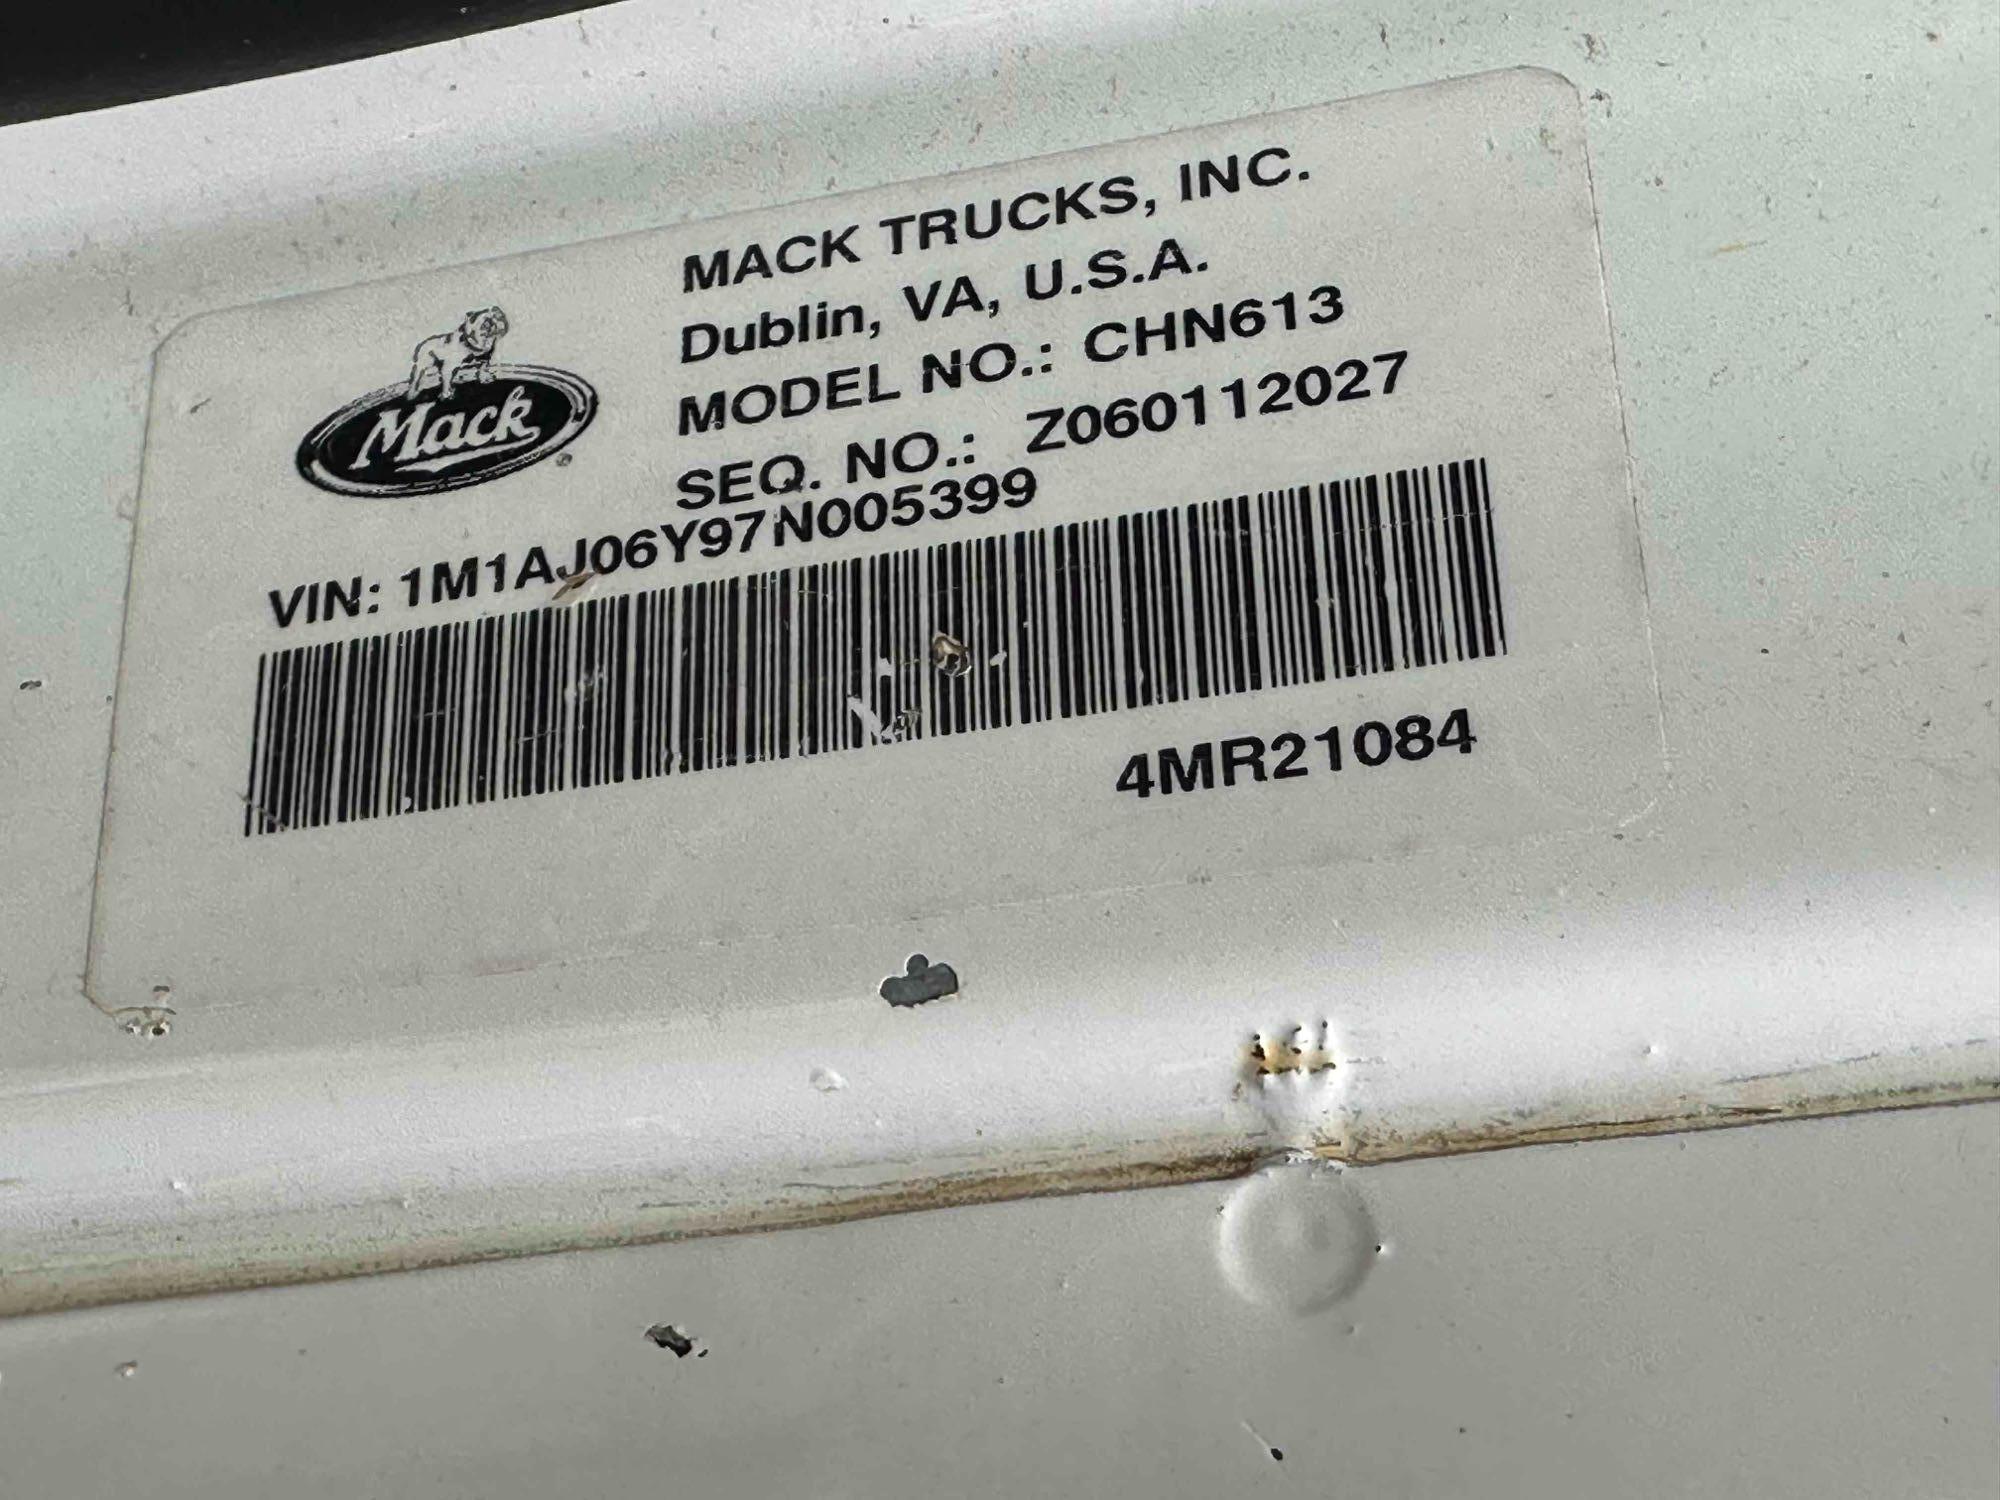 2007 Mack CHN613 Truck, VIN # 1M1AJ06Y97N005399